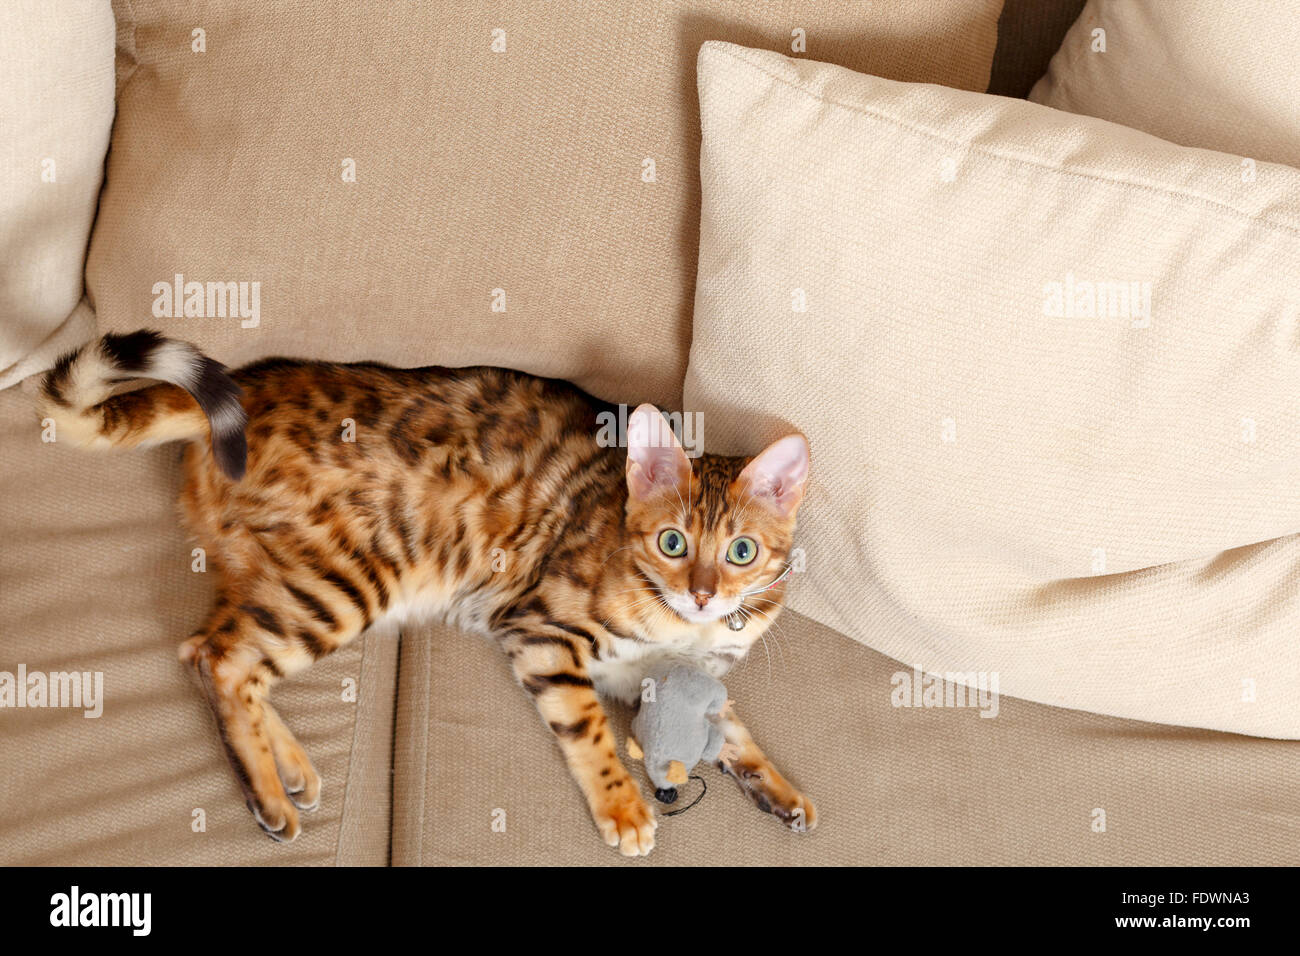 Femmina Gatto bengala gattino da sopra la posa sul divano modello di rilascio: No. Proprietà di rilascio: Sì (cat). Foto Stock